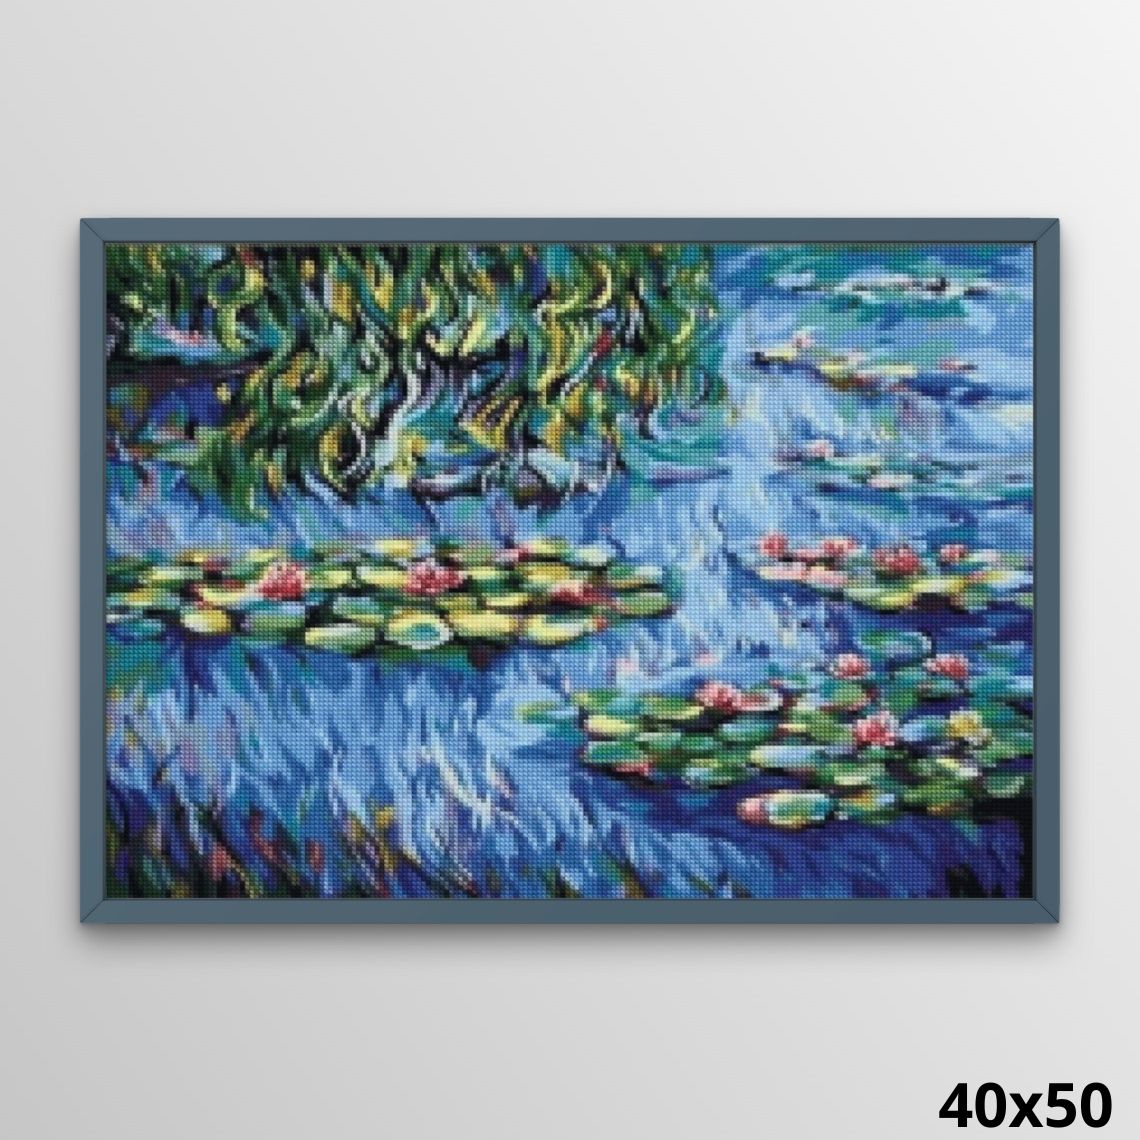 Monet Water Lilies 40x50 Diamond Art World